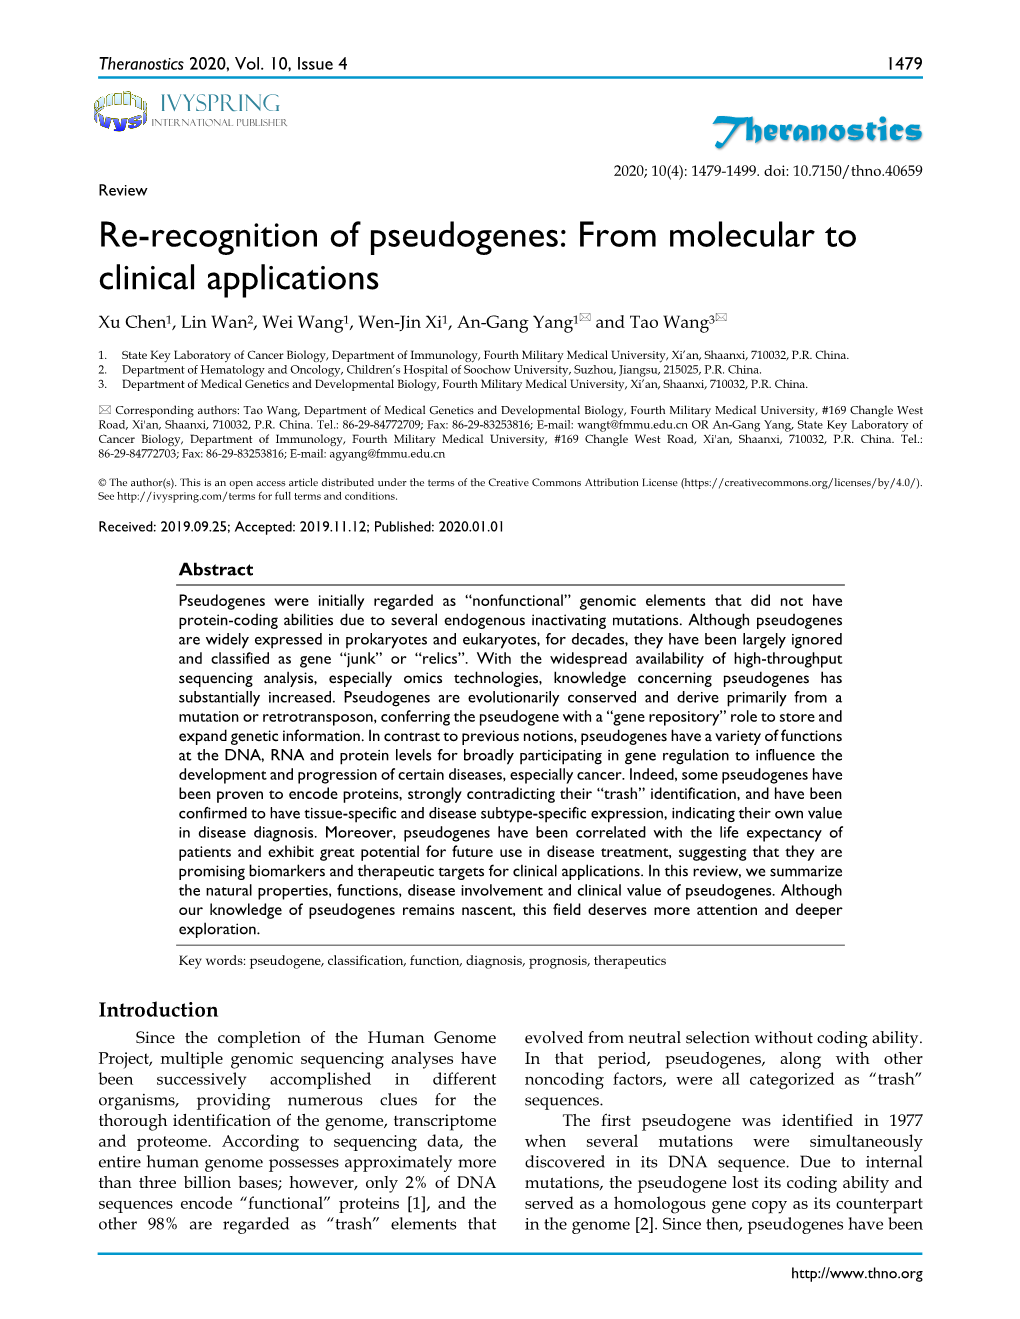 Re-Recognition of Pseudogenes: from Molecular to Clinical Applications Xu Chen1, Lin Wan2, Wei Wang1, Wen-Jin Xi1, An-Gang Yang1 and Tao Wang3